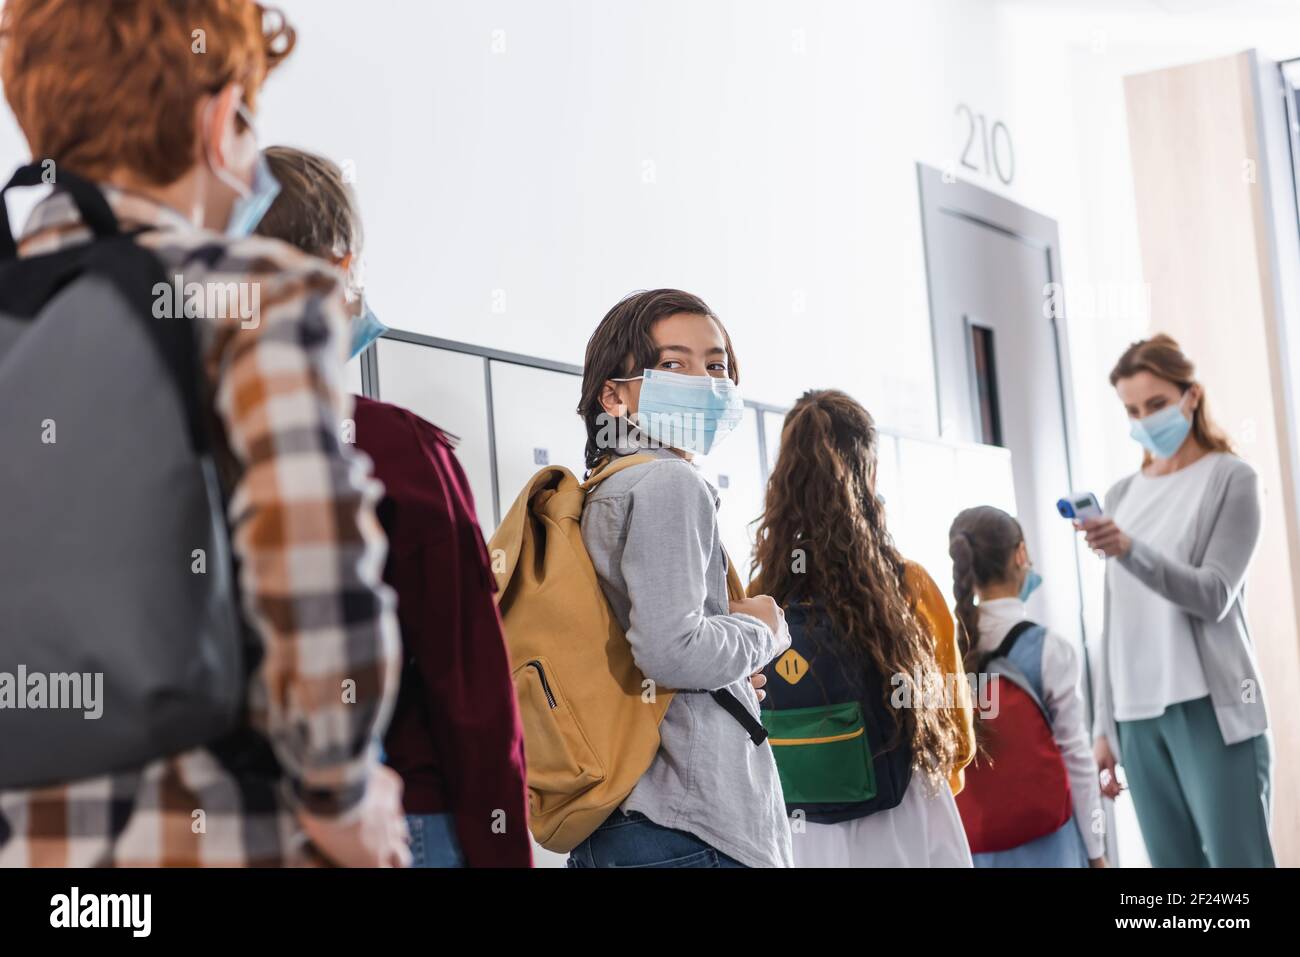 Junge in medizinische Maske in der Warteschlange in der Nähe von Klassenkameraden und stehen Lehrer mit Infrarot-Thermometer auf verschwommenem Hintergrund Stockfoto